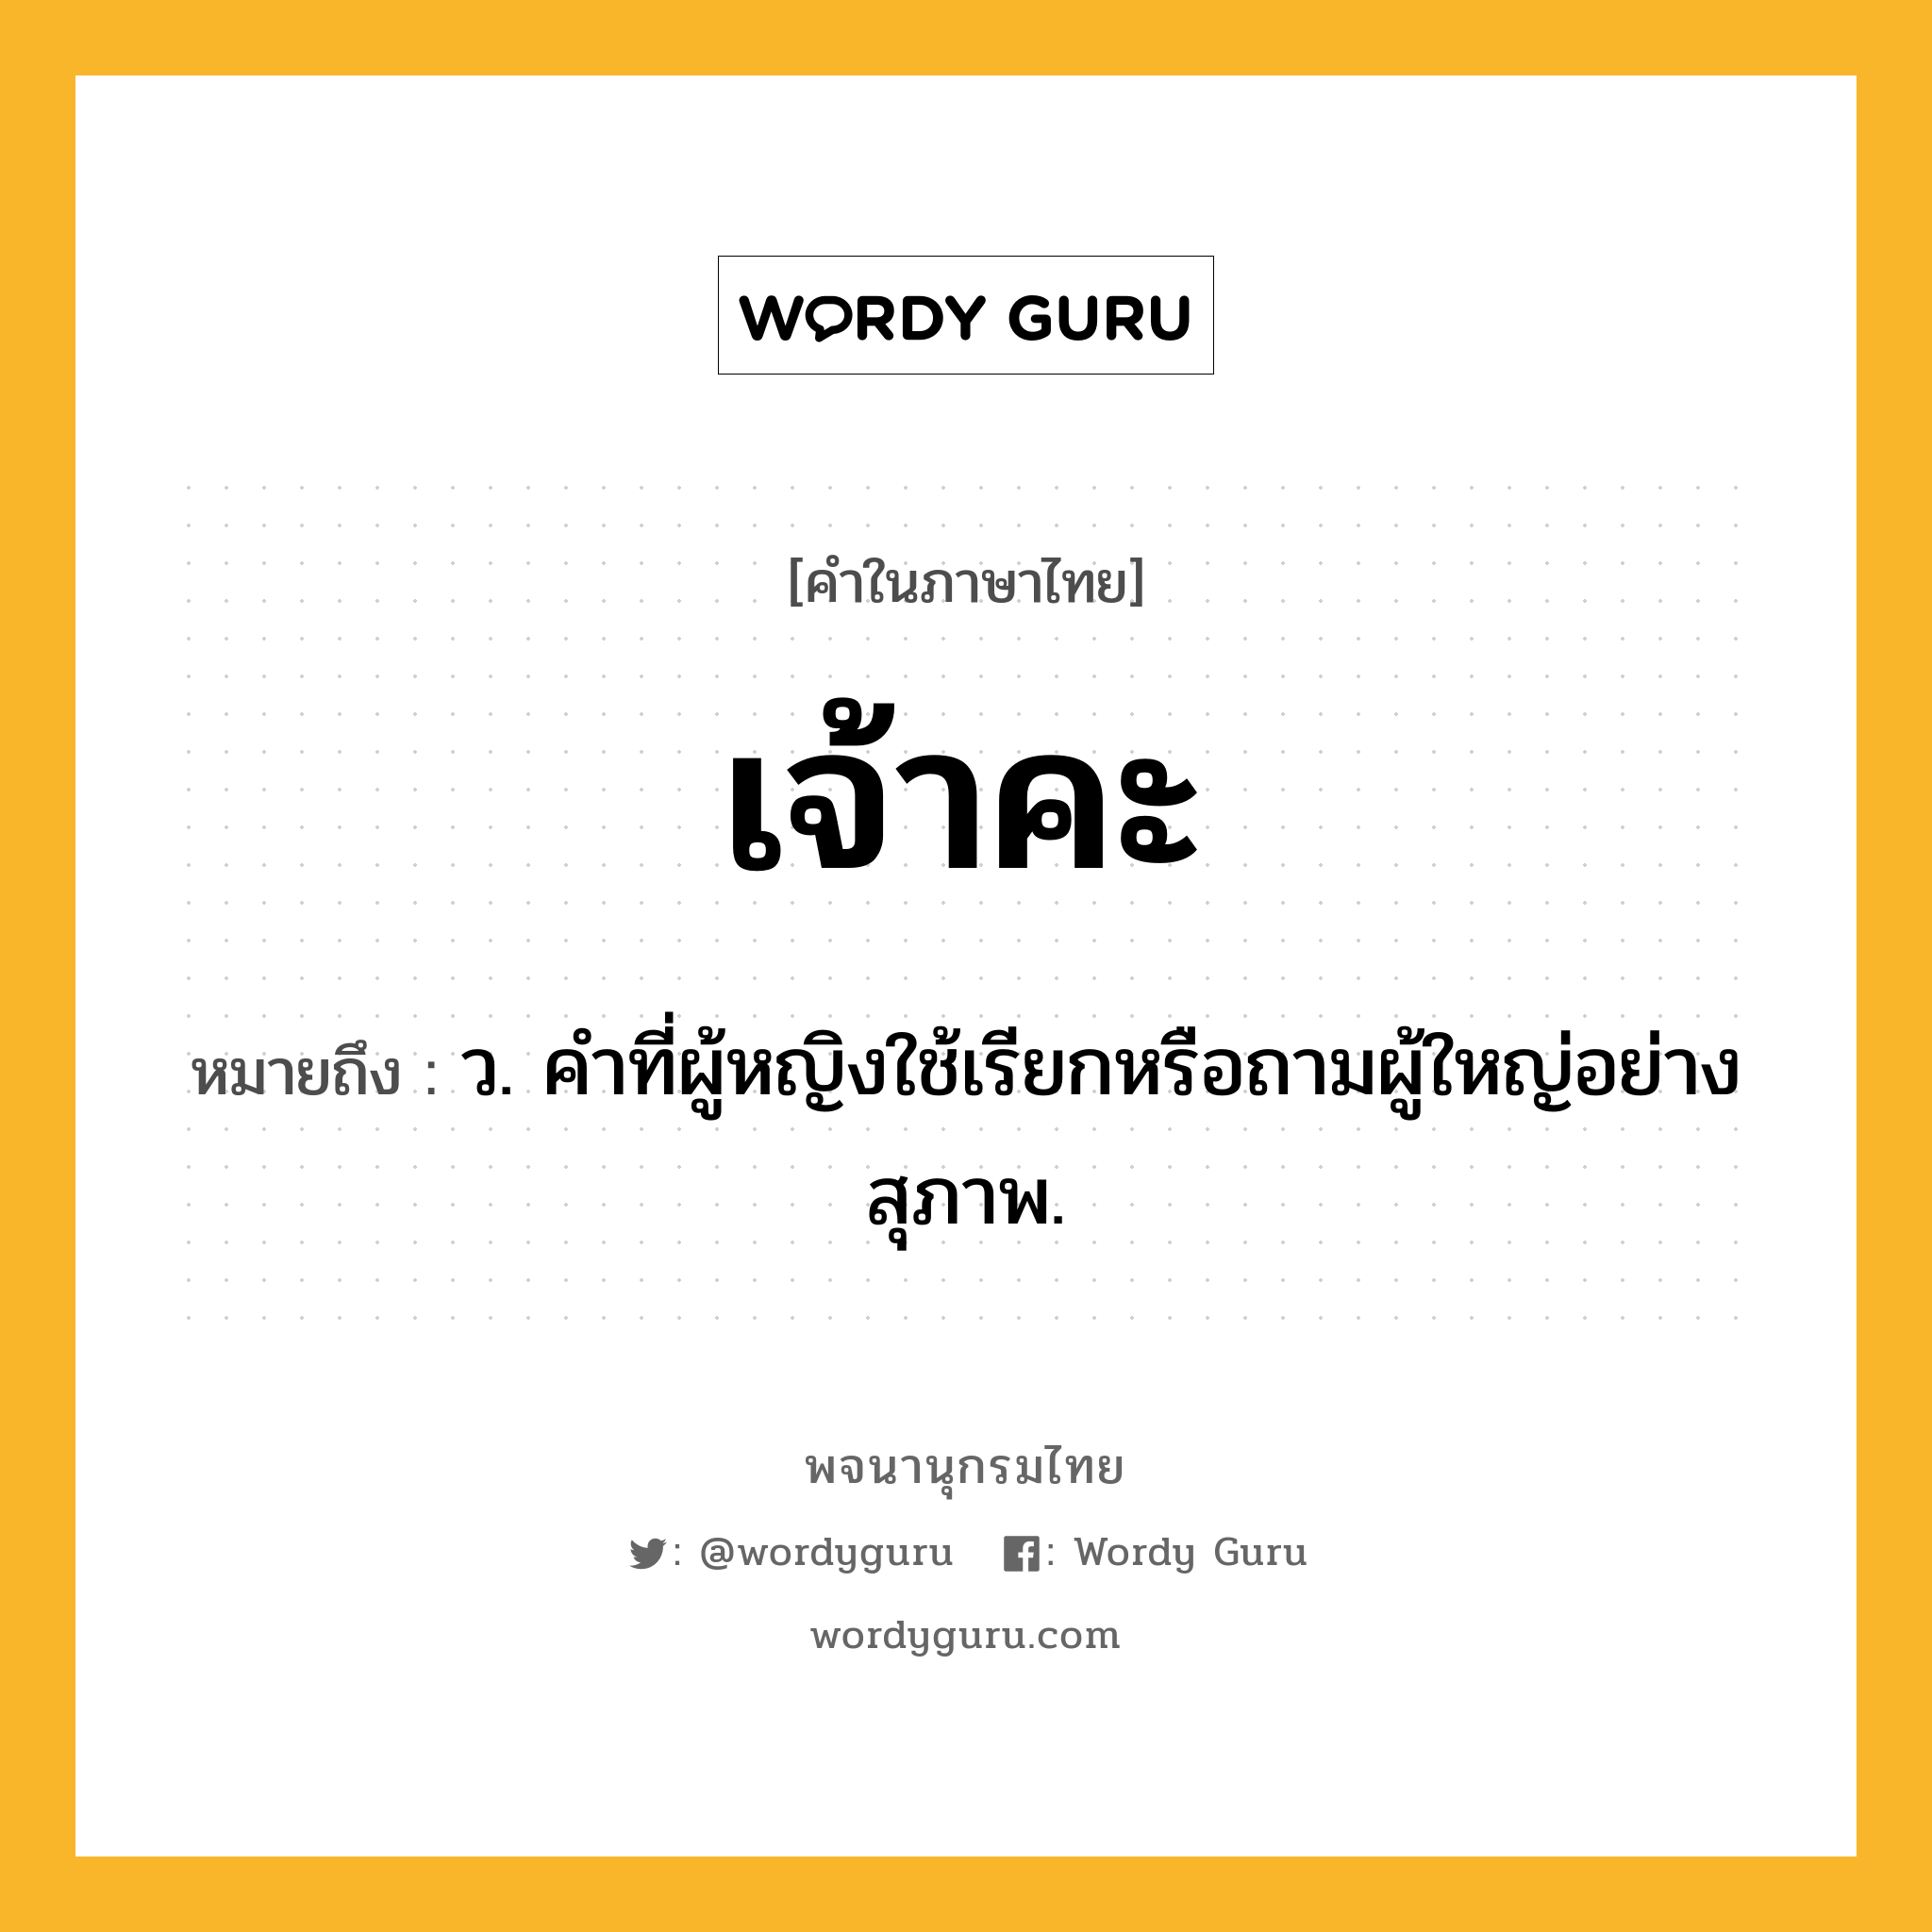 เจ้าคะ หมายถึงอะไร?, คำในภาษาไทย เจ้าคะ หมายถึง ว. คำที่ผู้หญิงใช้เรียกหรือถามผู้ใหญ่อย่างสุภาพ.